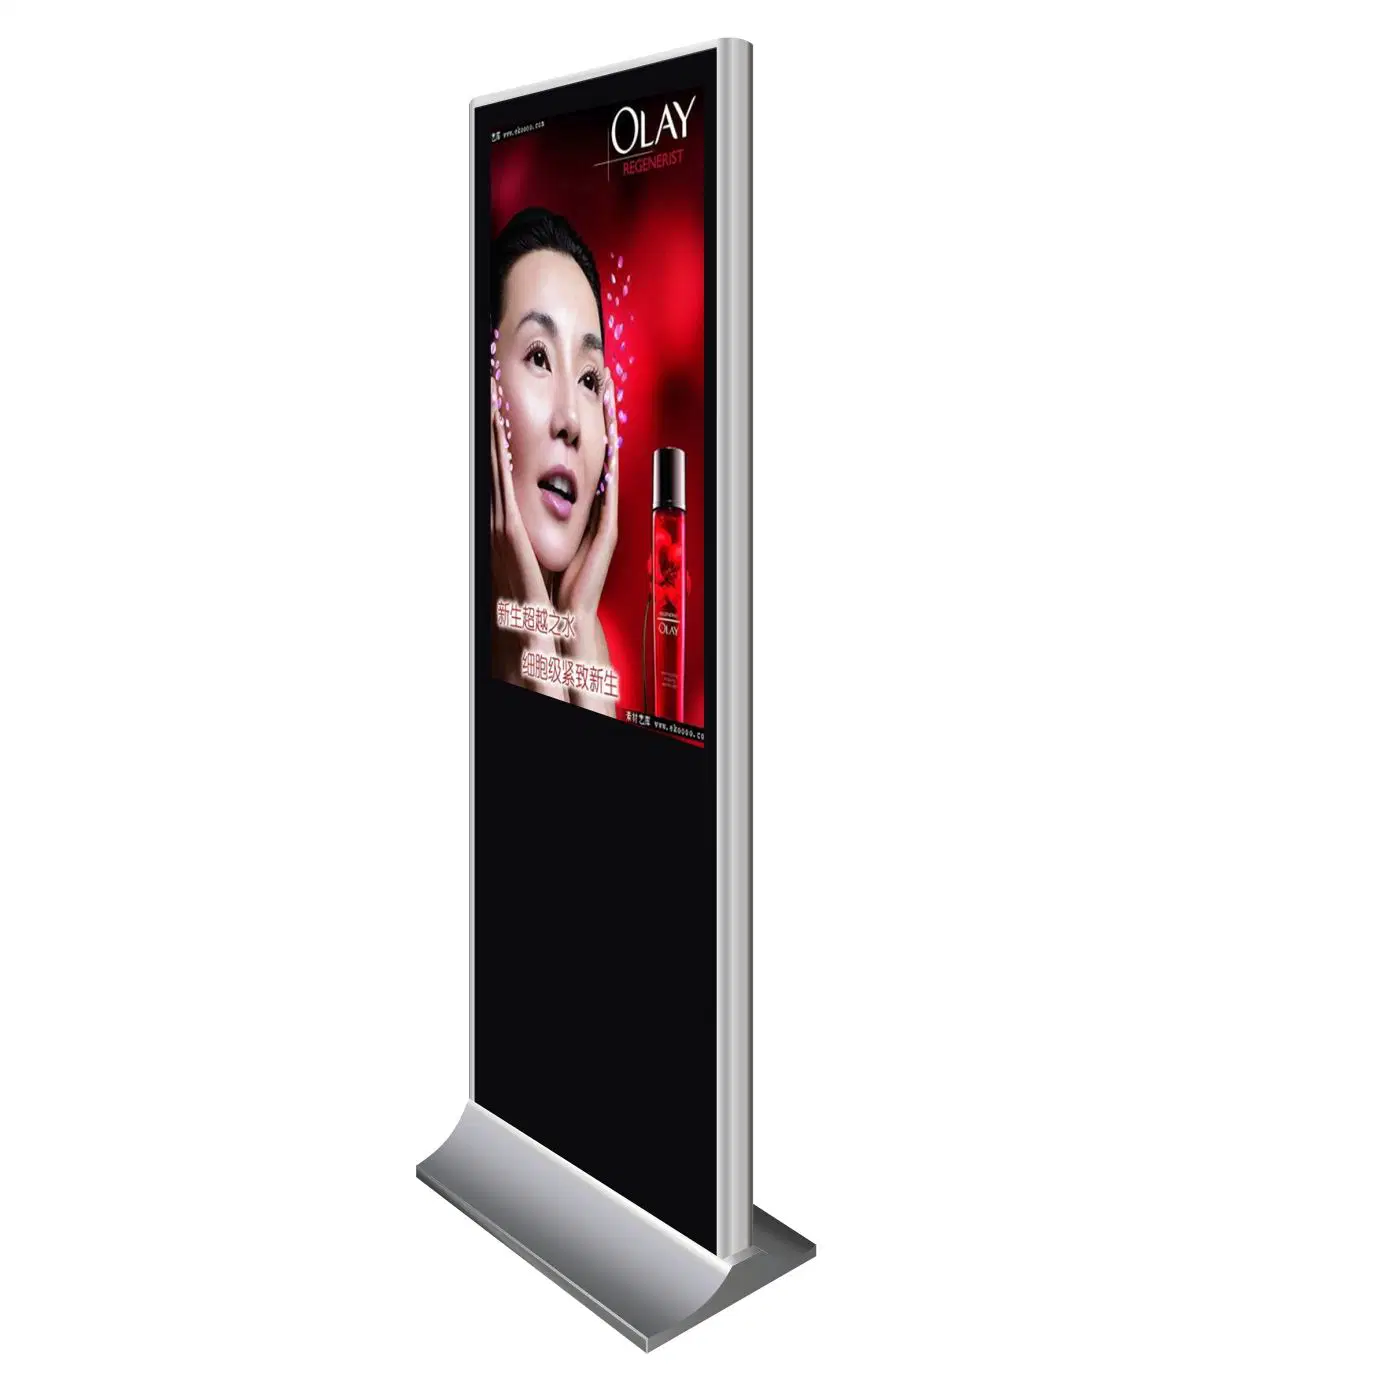 Totem d'affichage publicitaire interactif vertical sur pied avec écran LCD tactile TV pour la publicité.